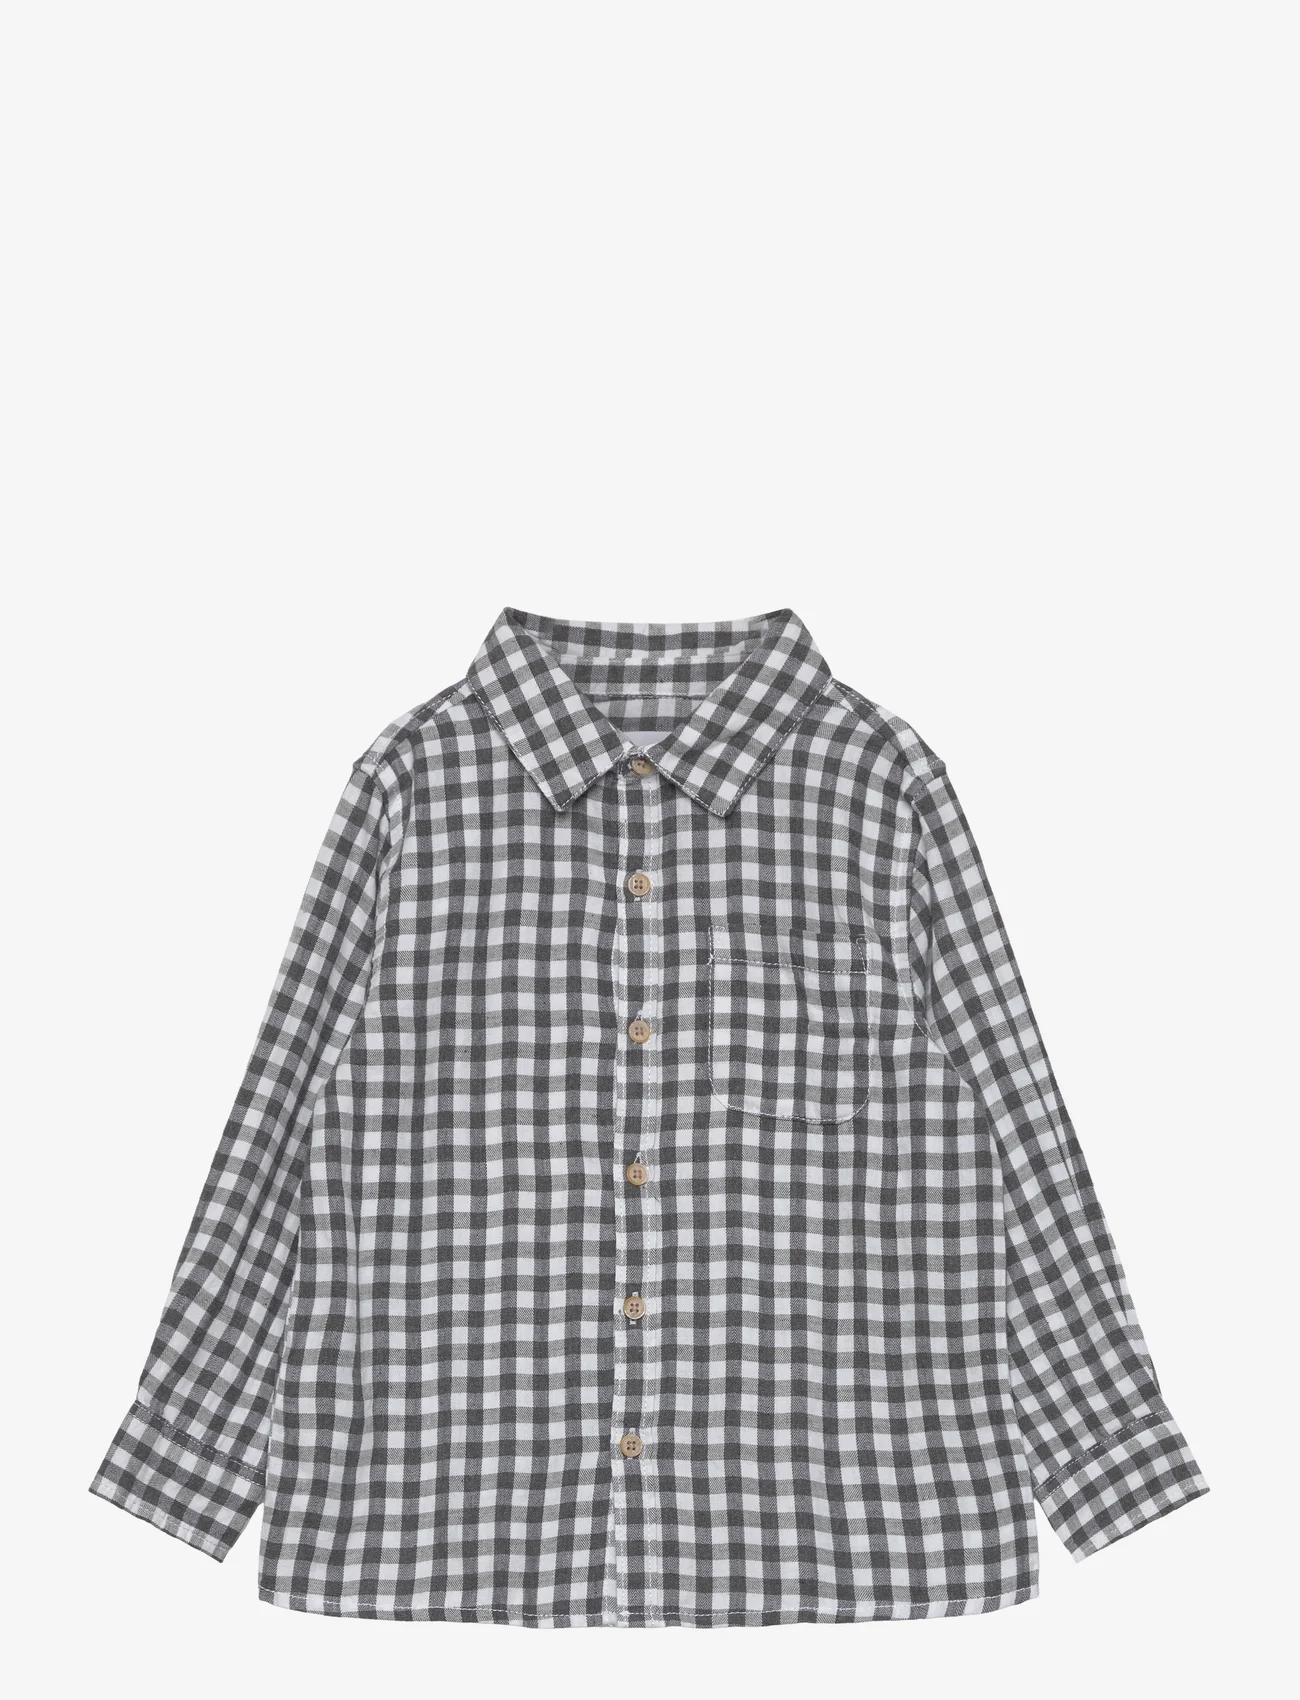 Mango - Regular-fit check shirt - pitkähihaiset kauluspaidat - medium grey - 0